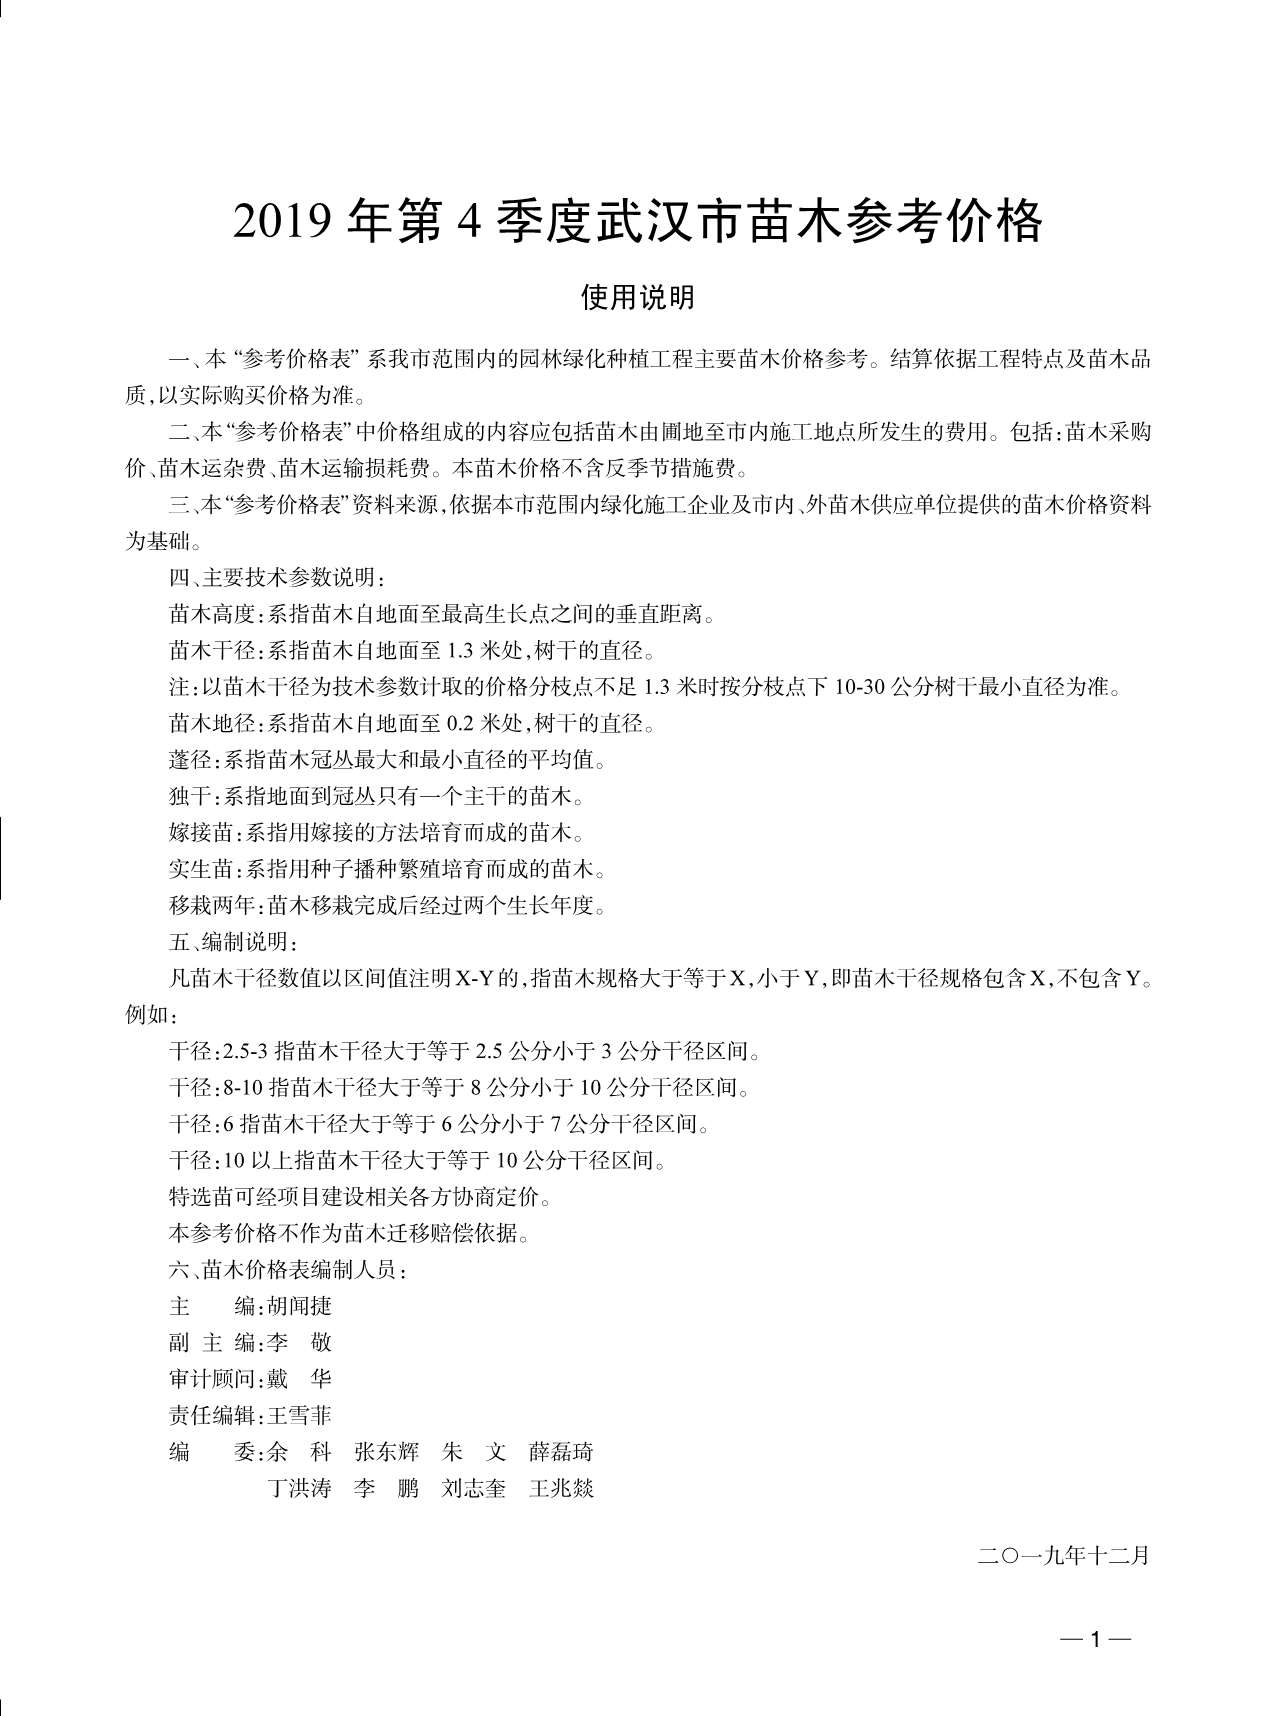 武汉市2019年4月园林信息价